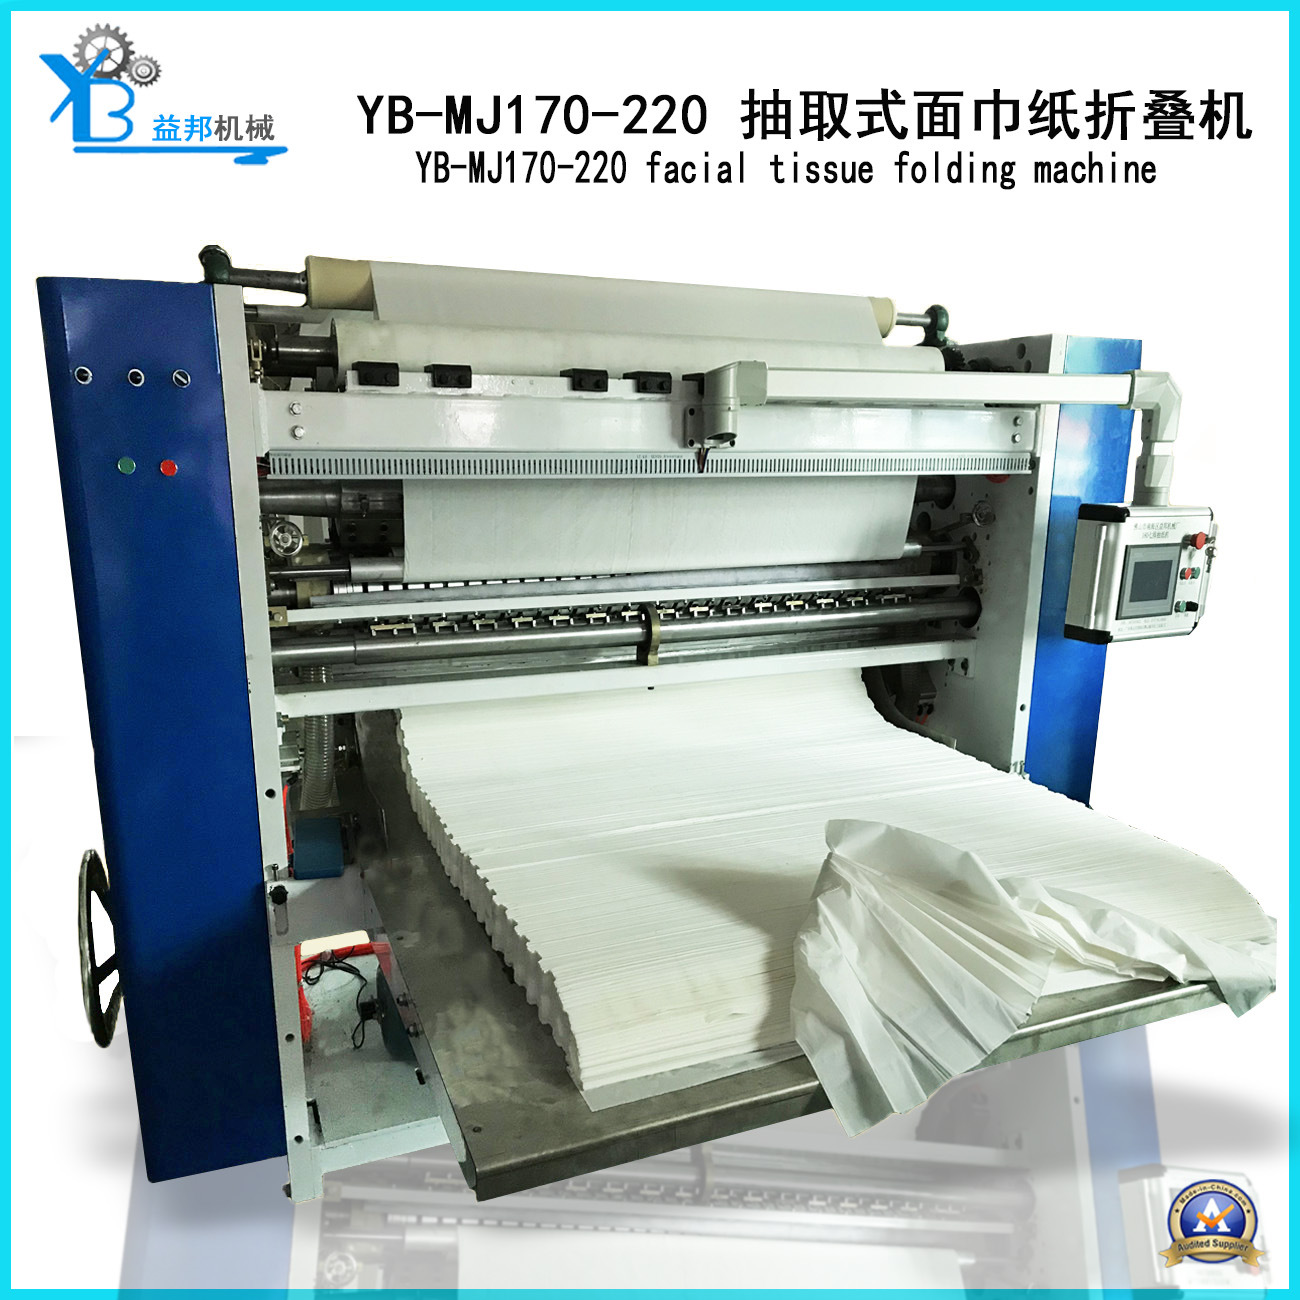 厂家直销全自动抽纸机抽取式面巾纸折叠机抽纸折叠机纸加工机械